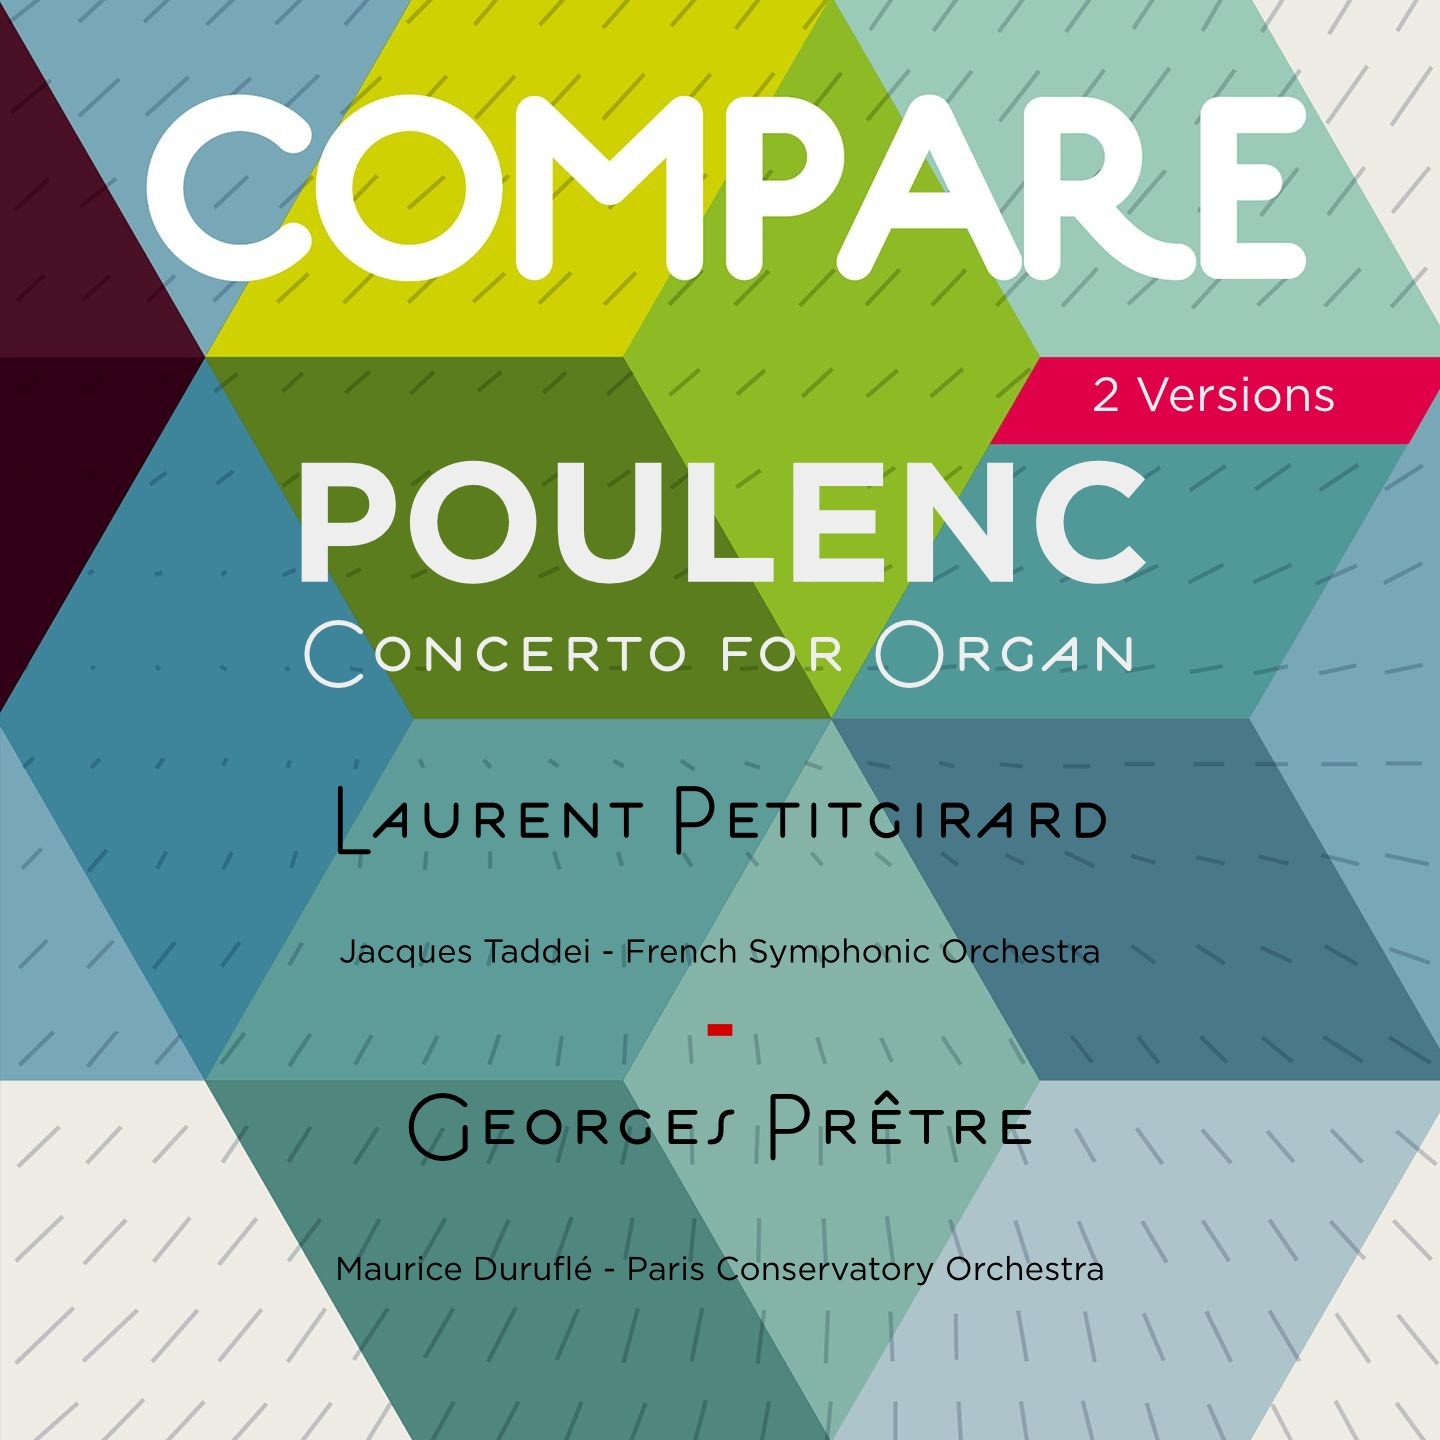 Poulenc: Concerto for Organ, String Orchestra  Timpani, Laurent Petitgirard vs Georges Pr tre Compare 2 Versions